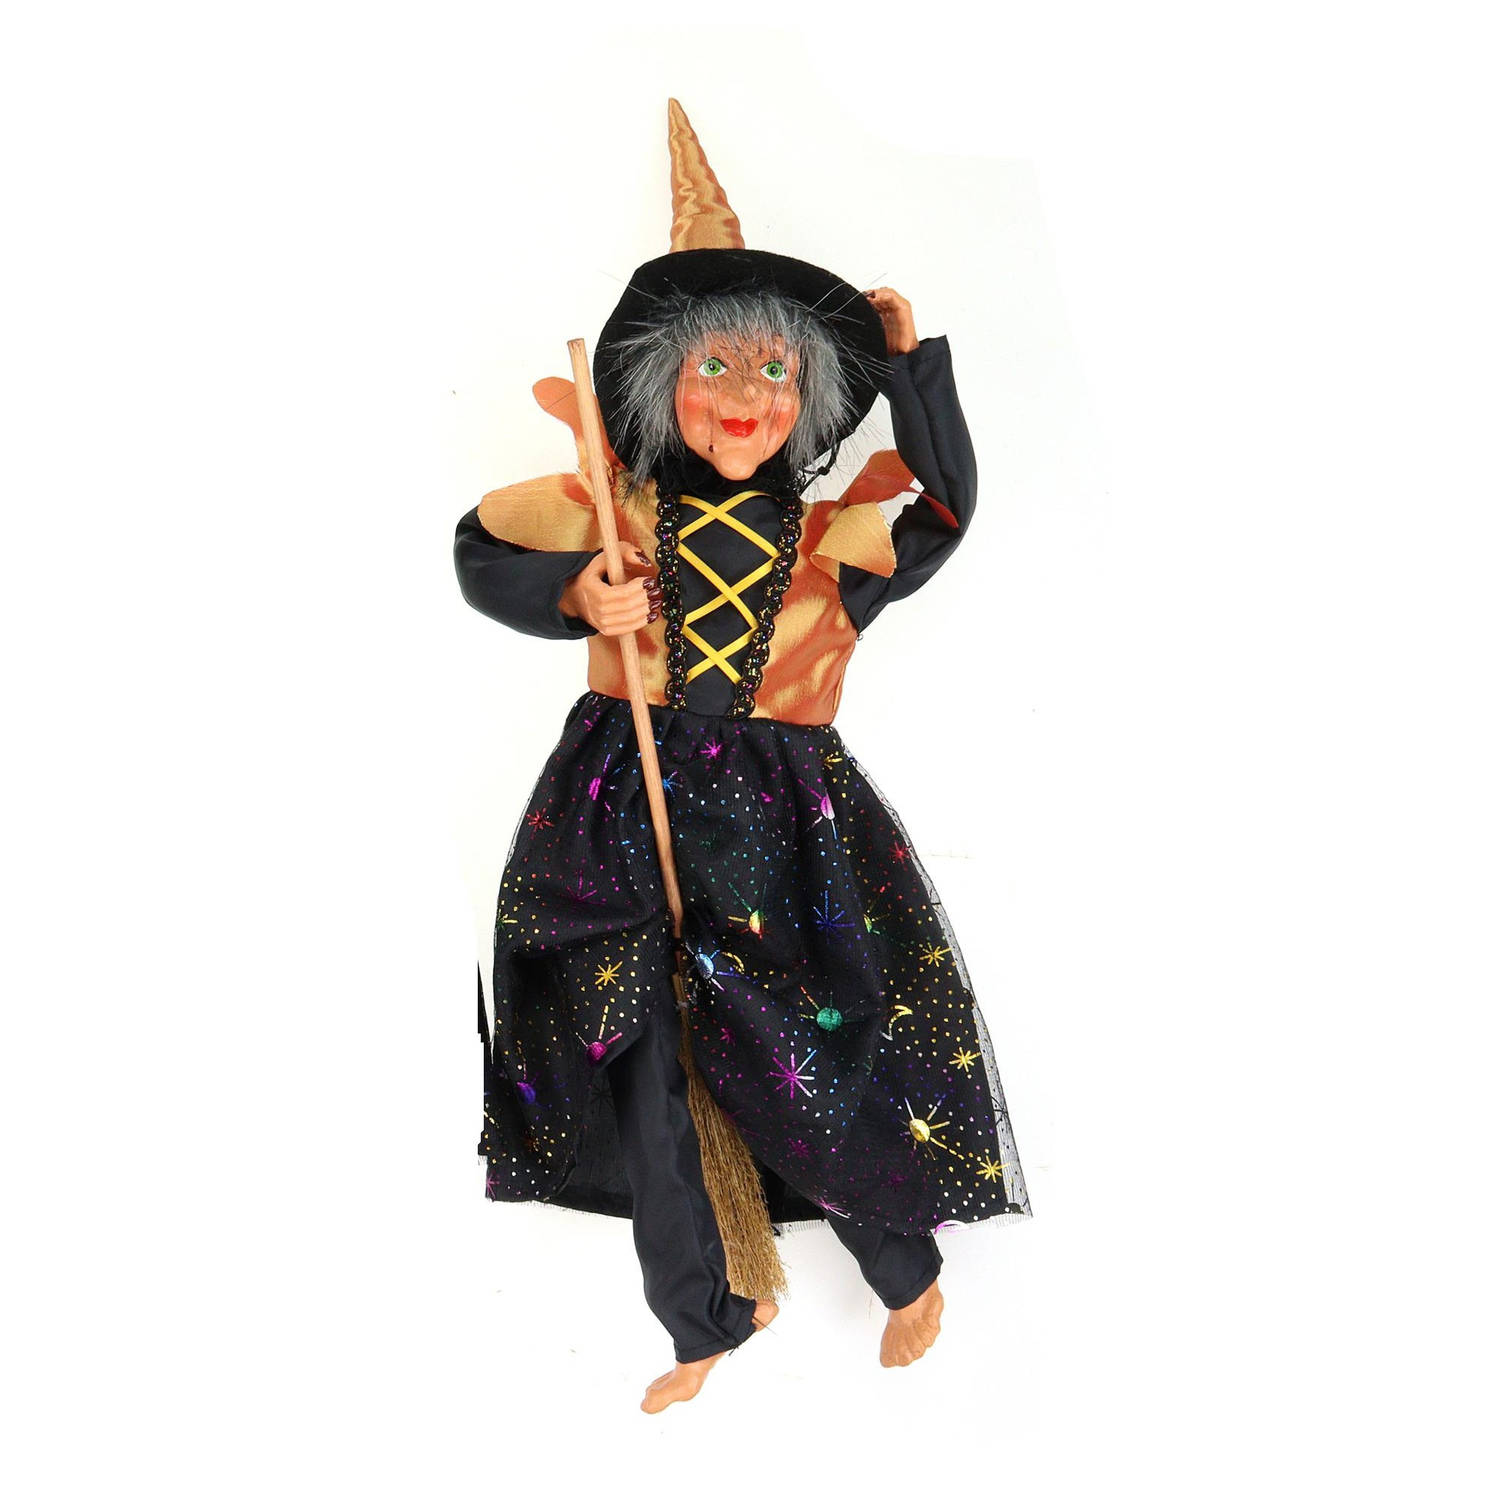 Creation decoratie heksen pop vliegend op bezem 40 cm zwart-oranje Halloween versiering Halloween po